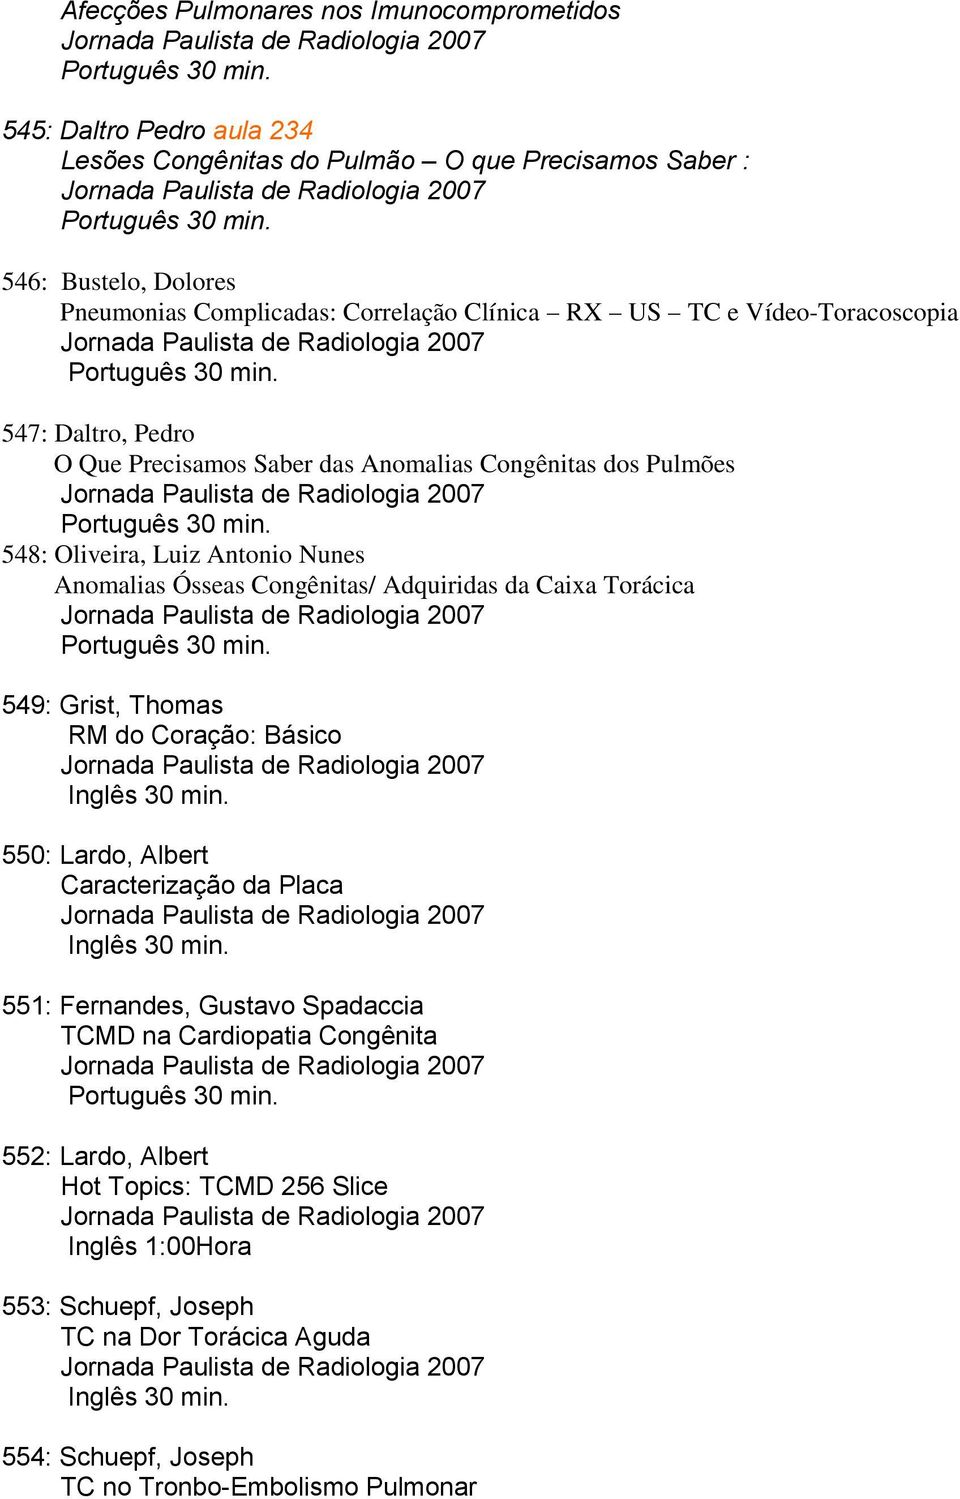 546: Bustelo, Dolores Pneumonias Complicadas: Correlação Clínica RX US TC e Vídeo-Toracoscopia Jornada Paulista de Radiologia 2007 Português 30 min.